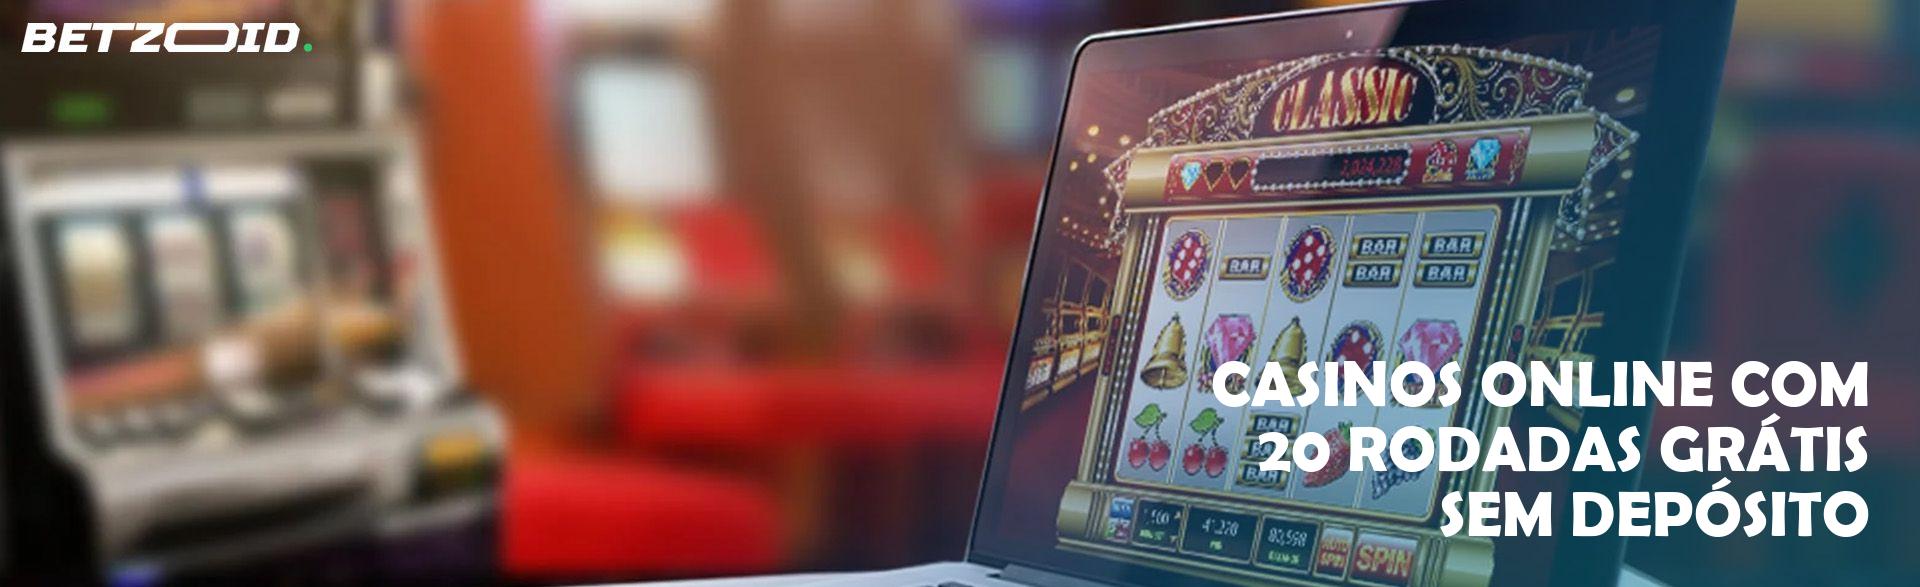 Casinos Online com 20 Rodadas Grátis sem Depósito.